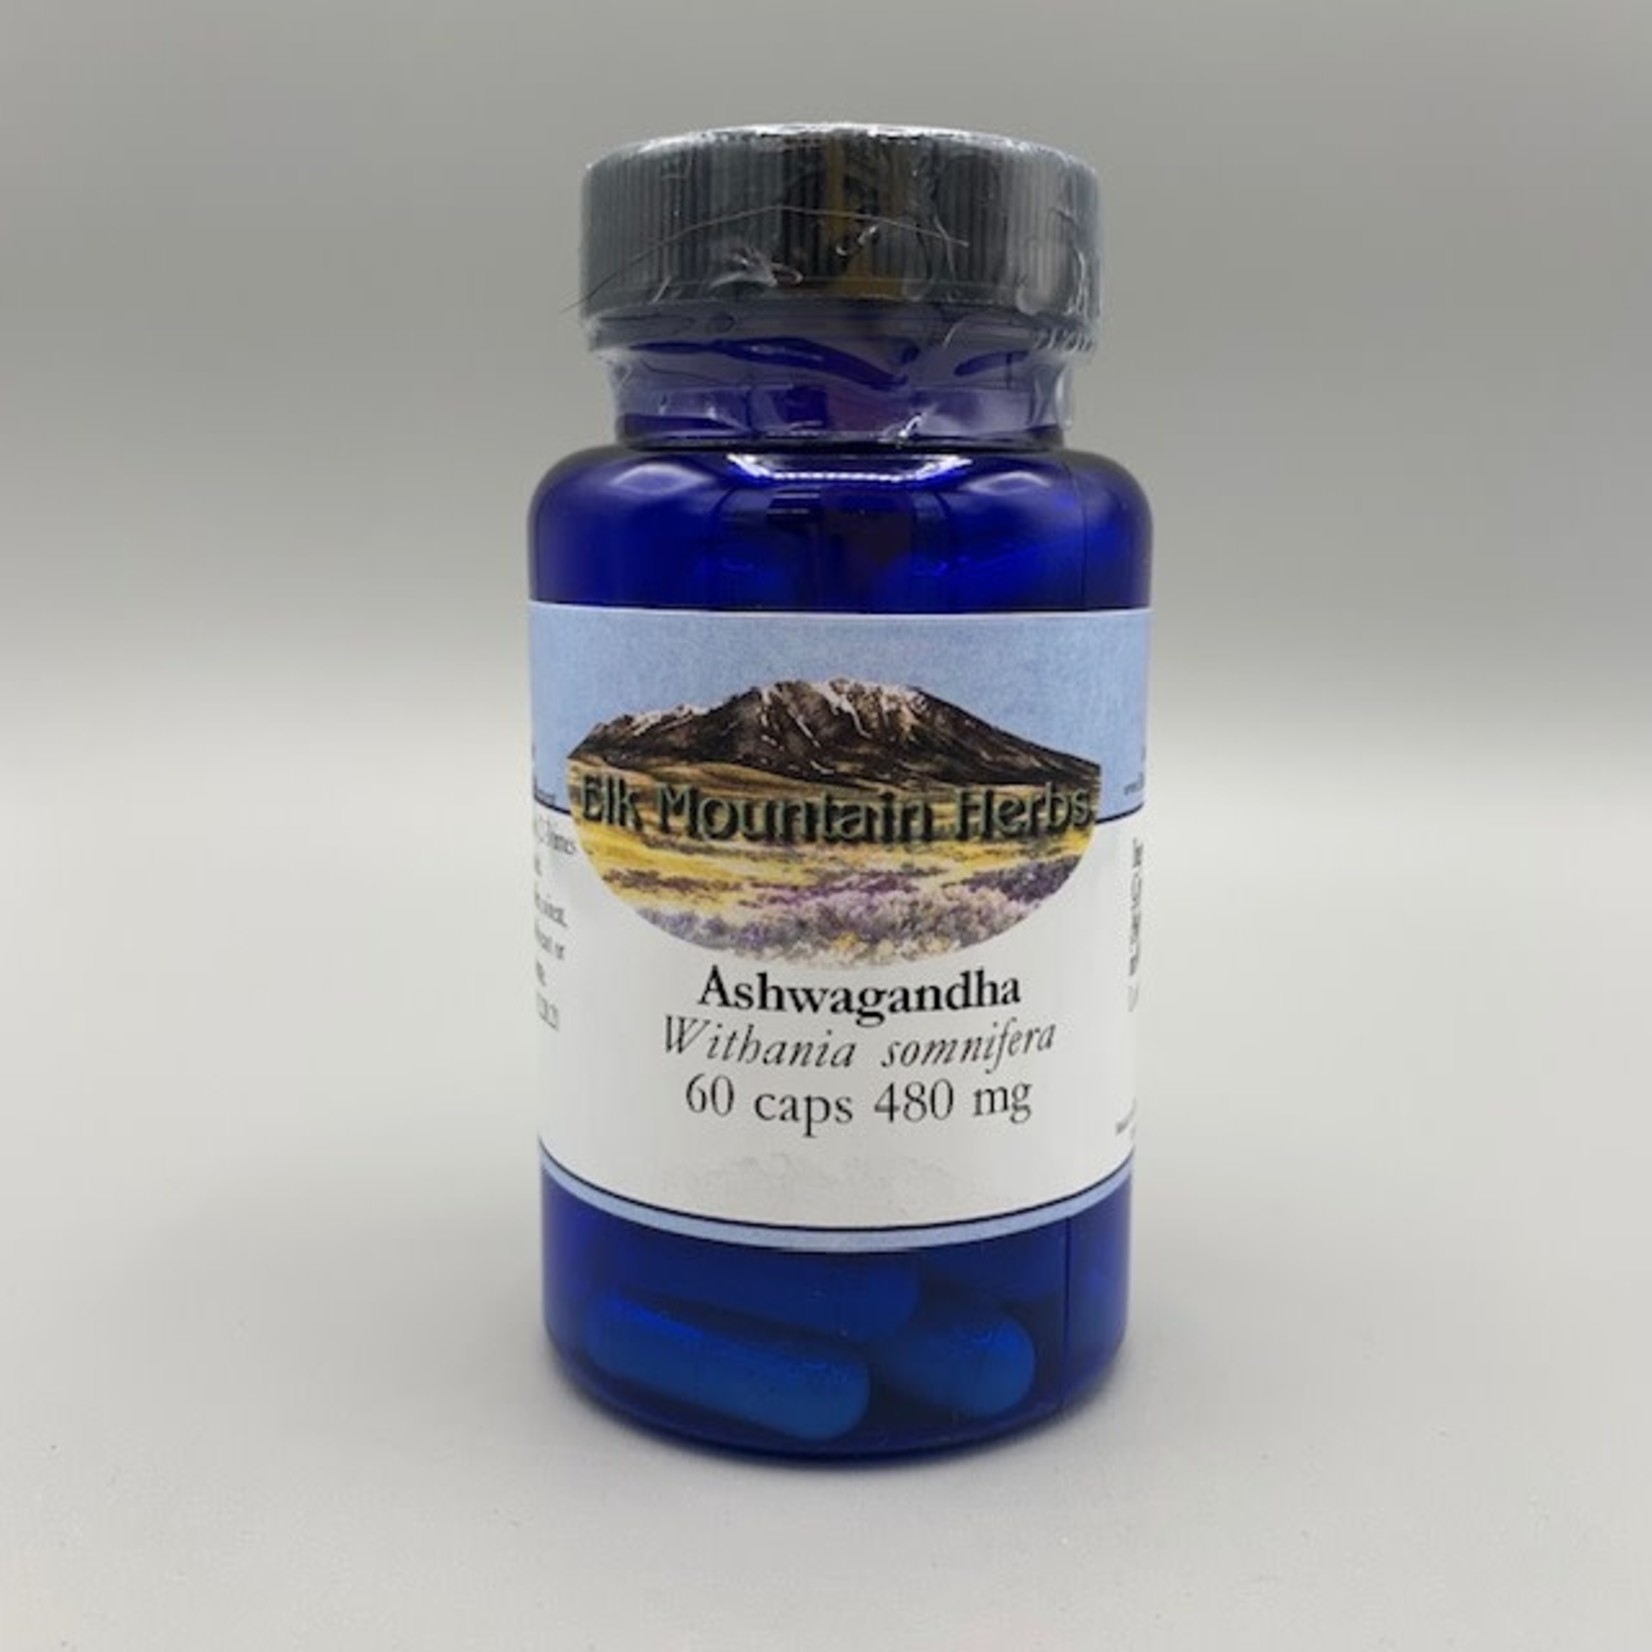 Elk Mountain Herbs Ashwagandha (Withania somnifera) - 480mg, 60 Veg Capsules